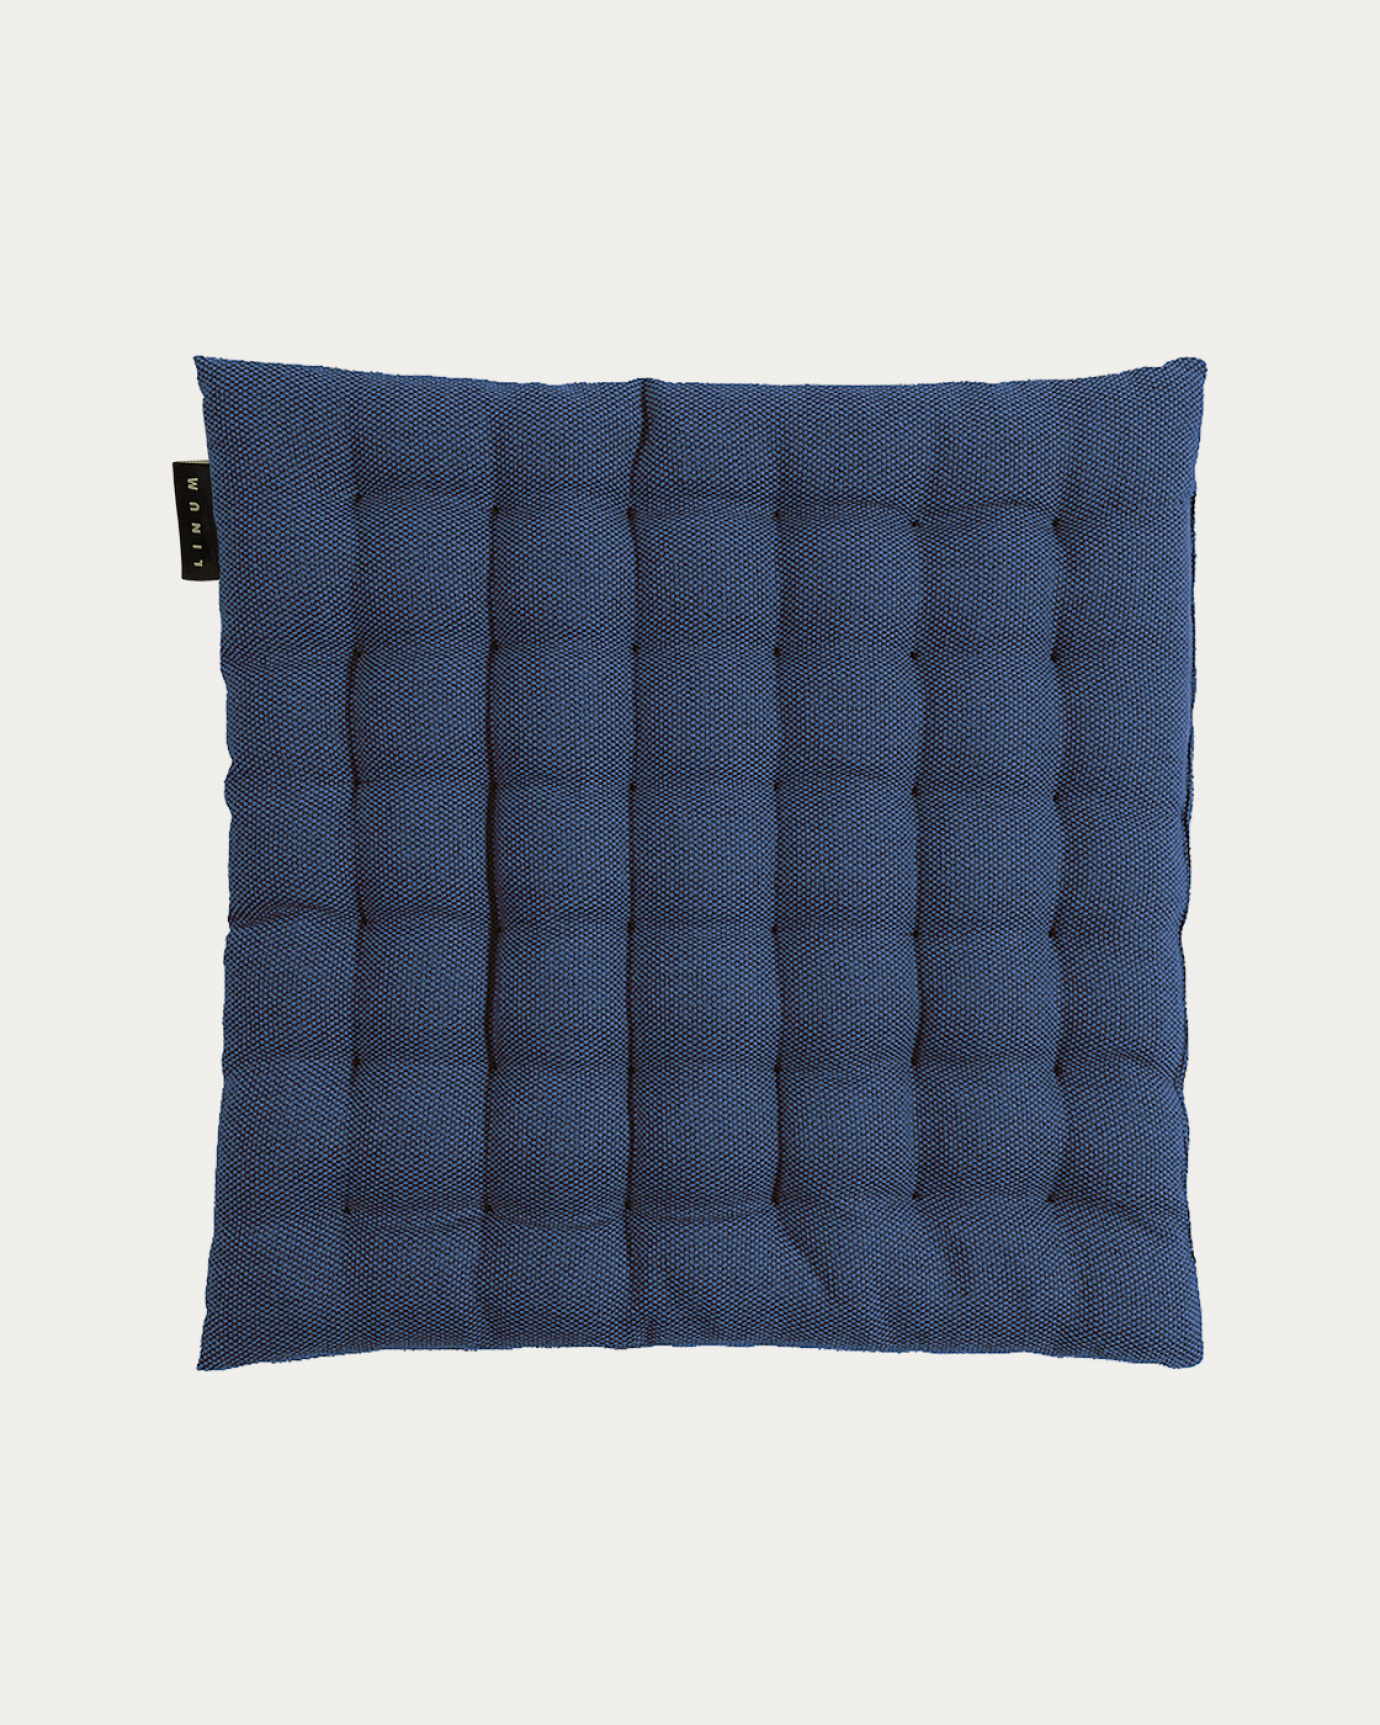 Immagine prodotto blu indaco PEPPER cuscini sedie di cotone con imbottitura in poliestere di LINUM DESIGN. Dimensioni 40x40 cm.